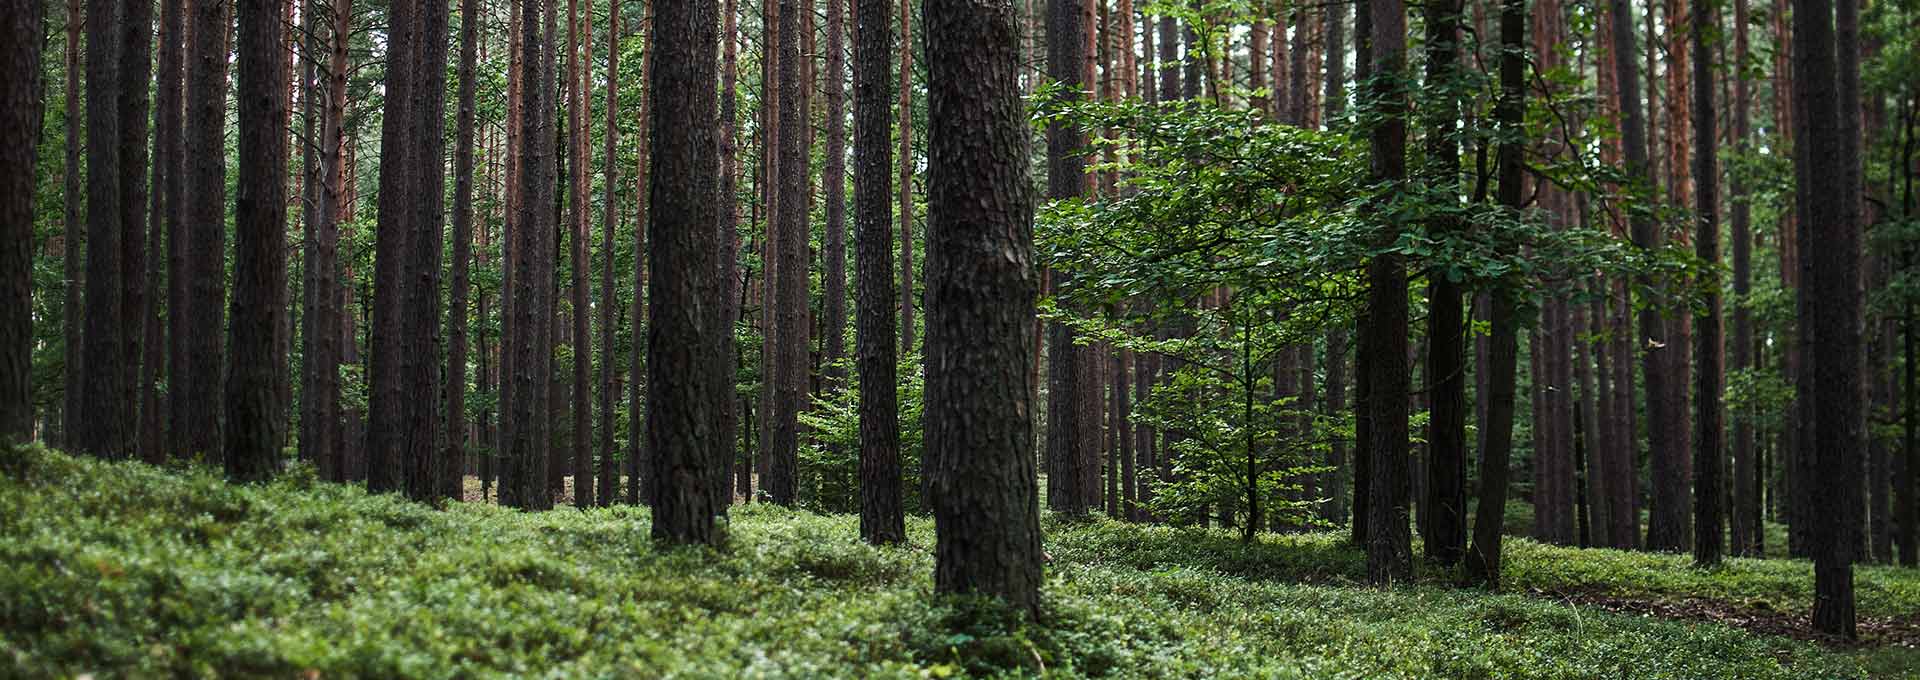 Reforestación de árboles según la custodia PEFC